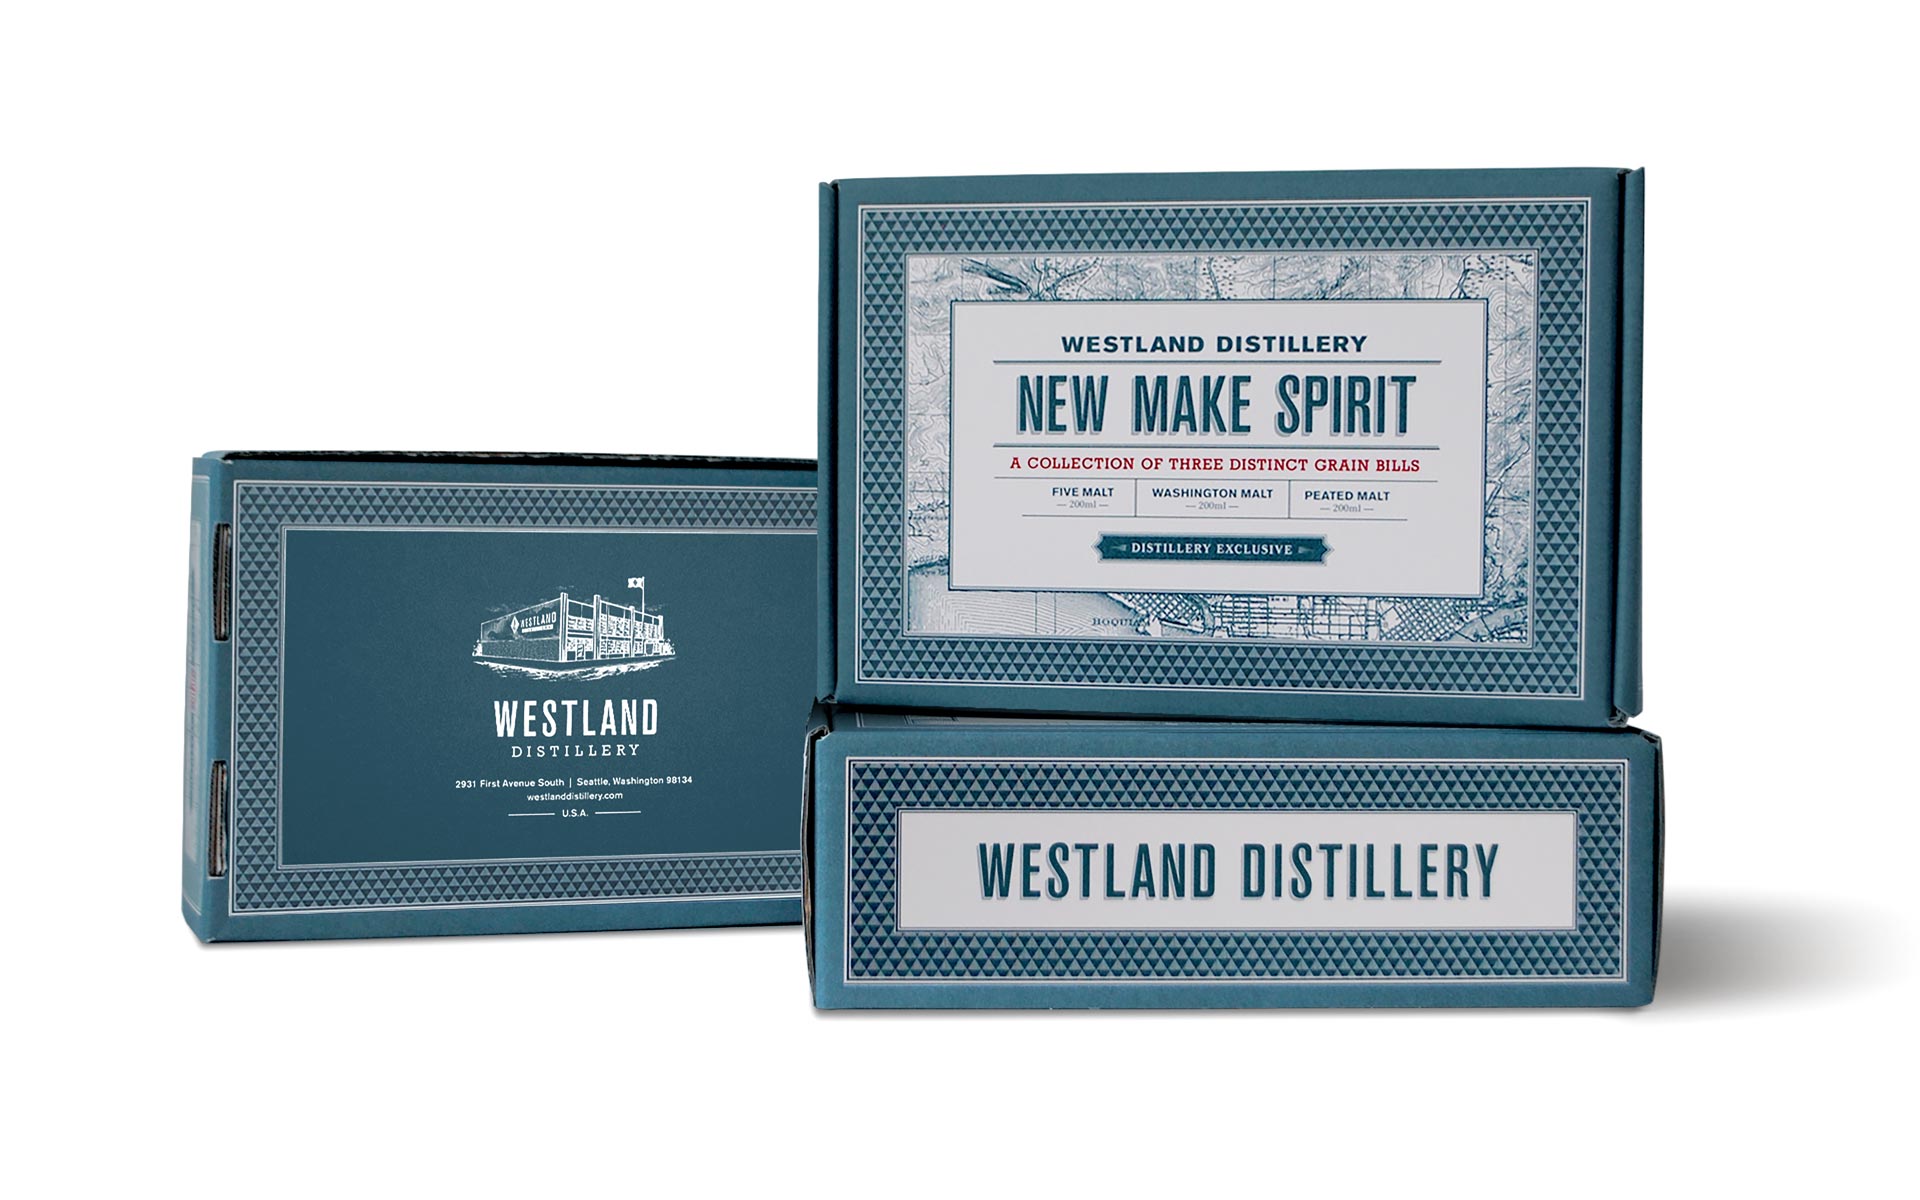 Bespoke beverage packaging by Creative Retail Packaging for Westland Distillery